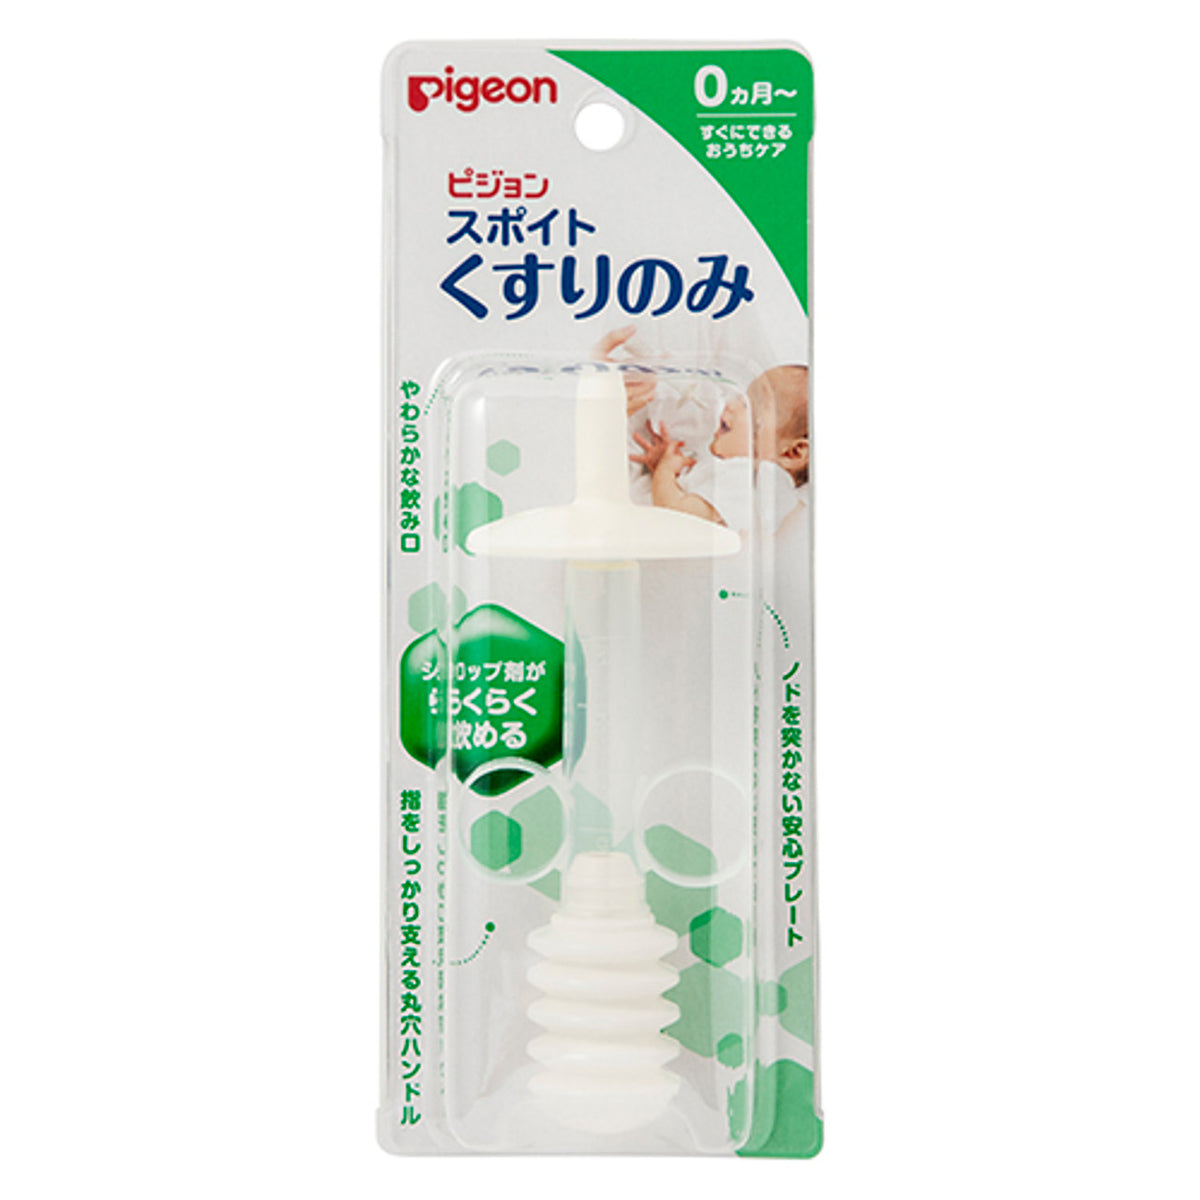 Pigeon Medicine Dropper Syringe Dispenser 5ml Made in Japan